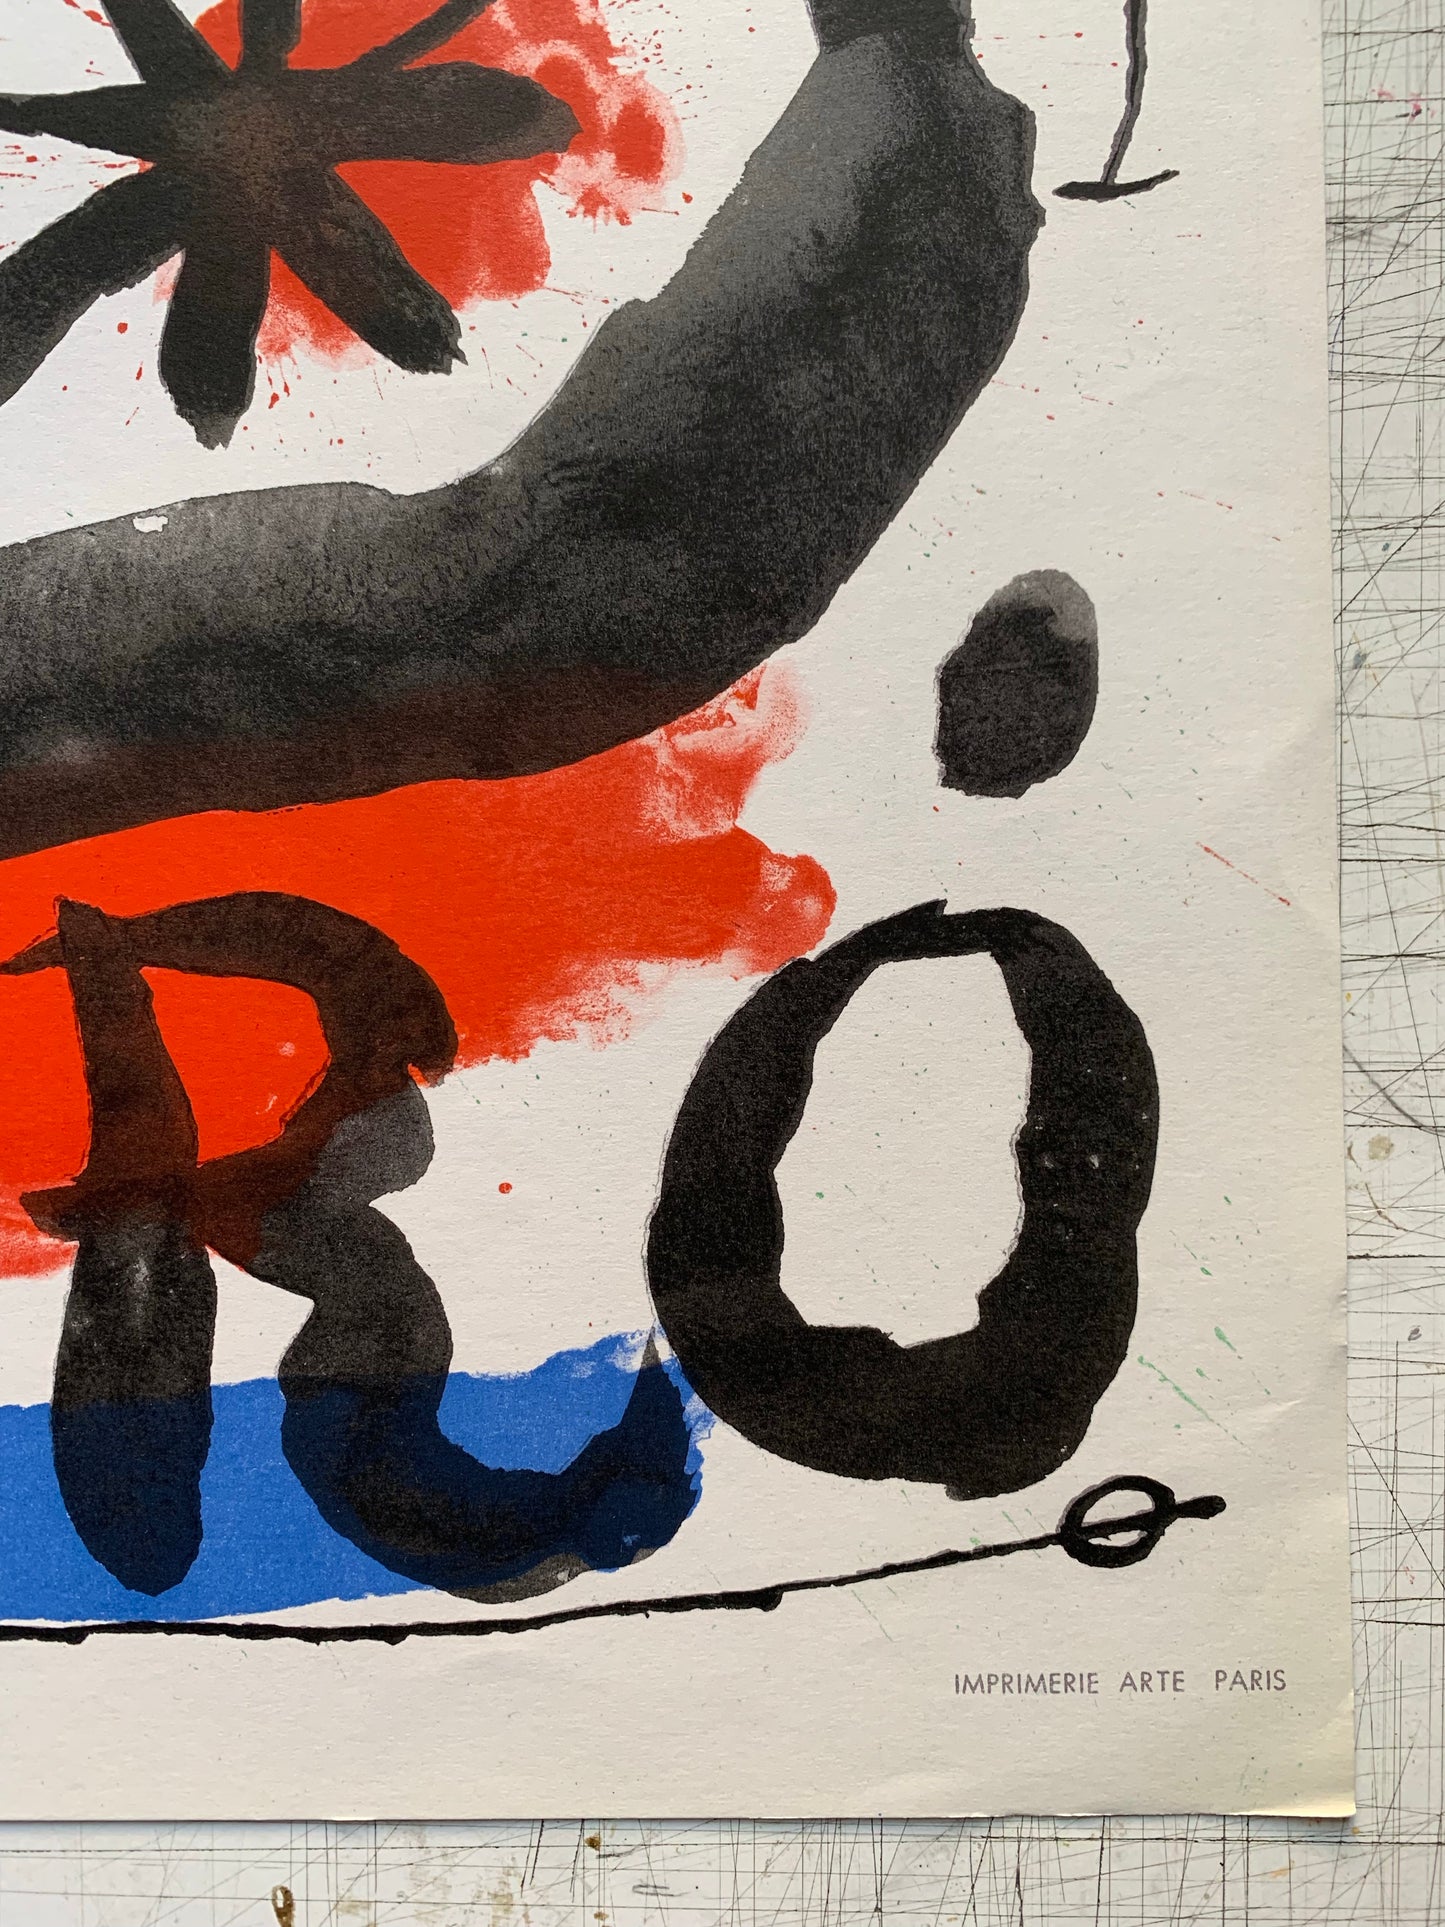 Joan Miró. “Miró - œuvres graphiques”, ca 1965